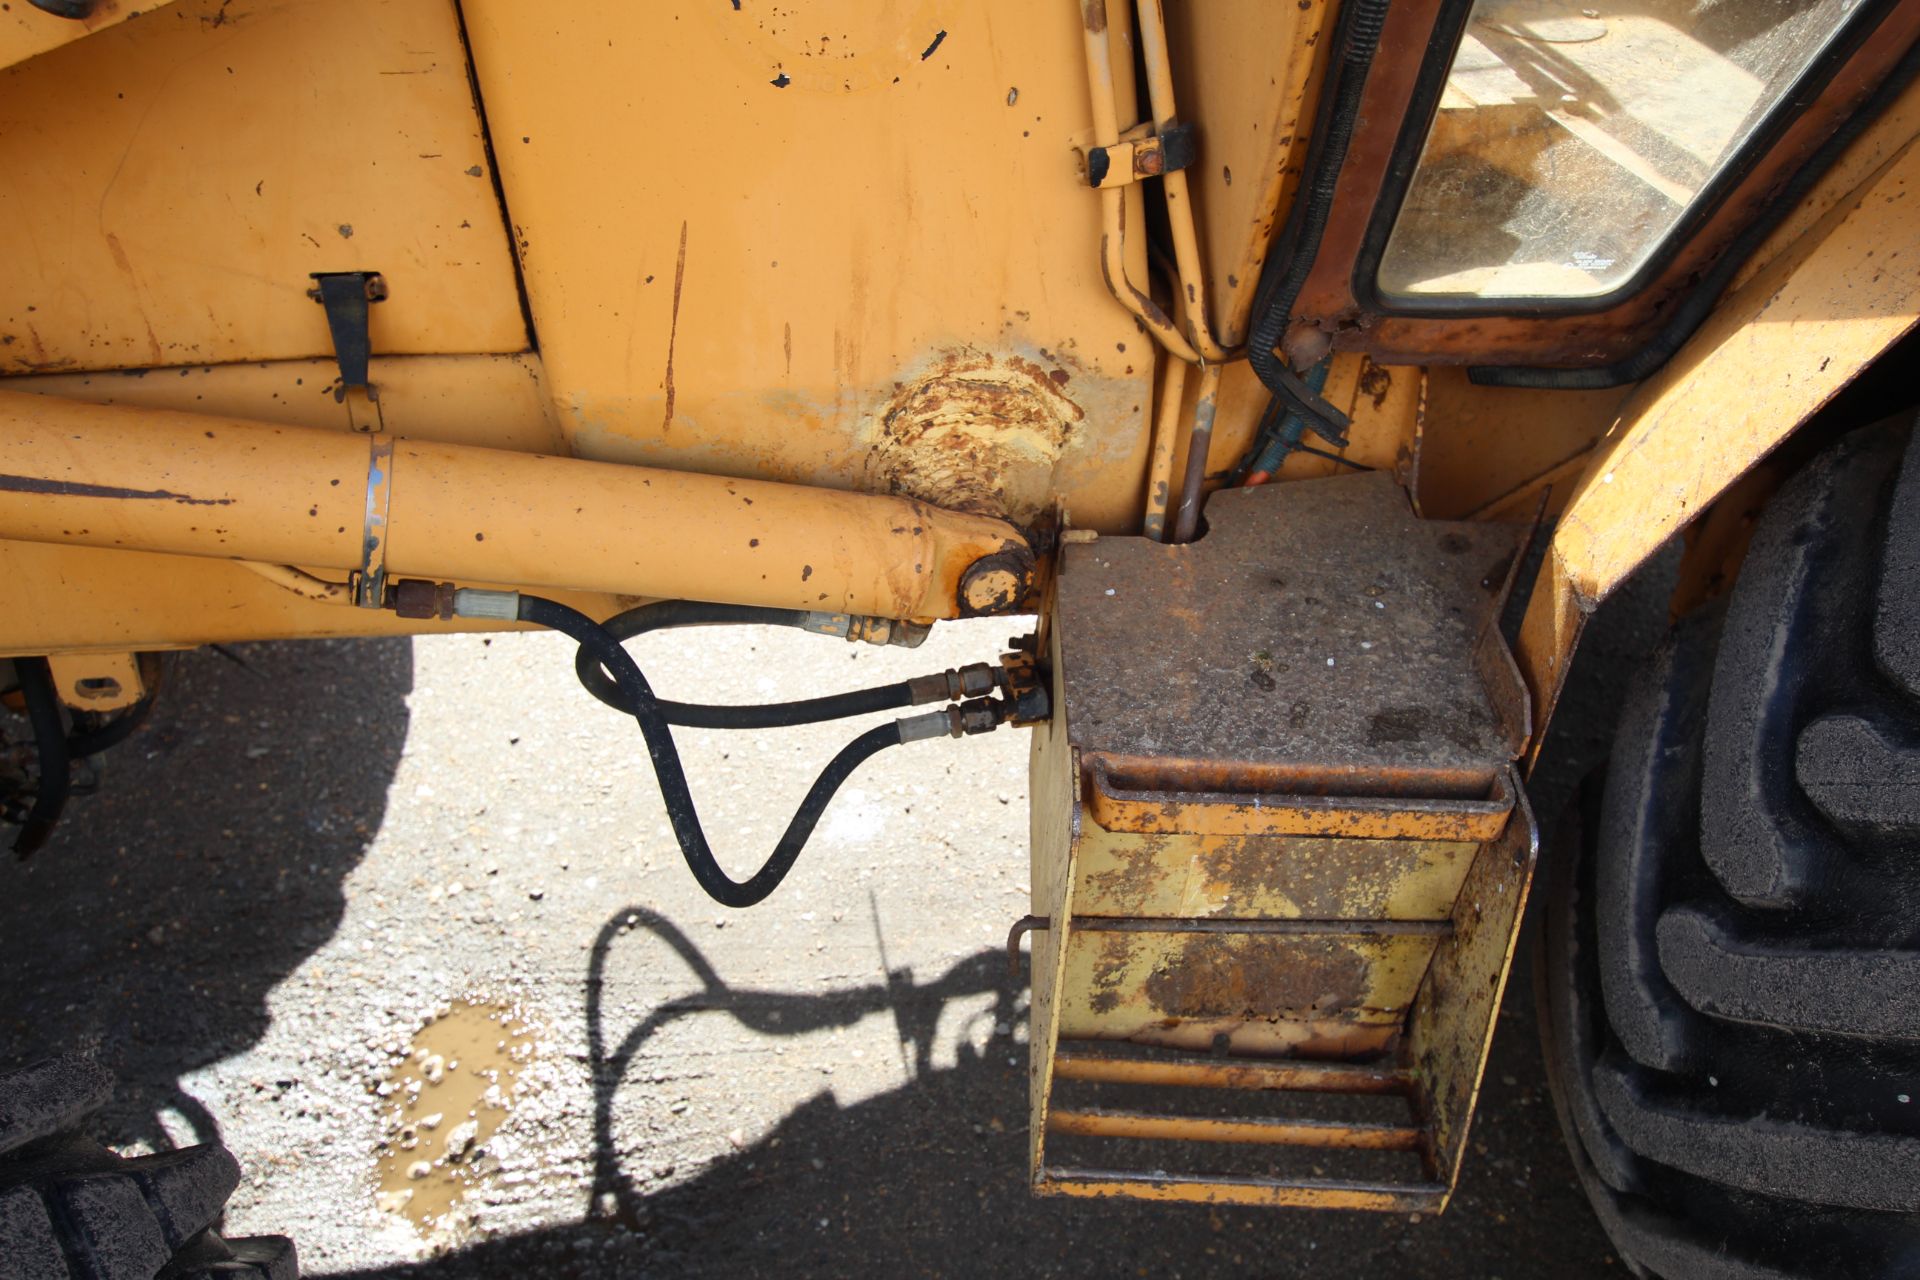 Case 580G Construction King 4WD backhoe loader. Registration D187 KKL. Date of first registration - Image 14 of 68